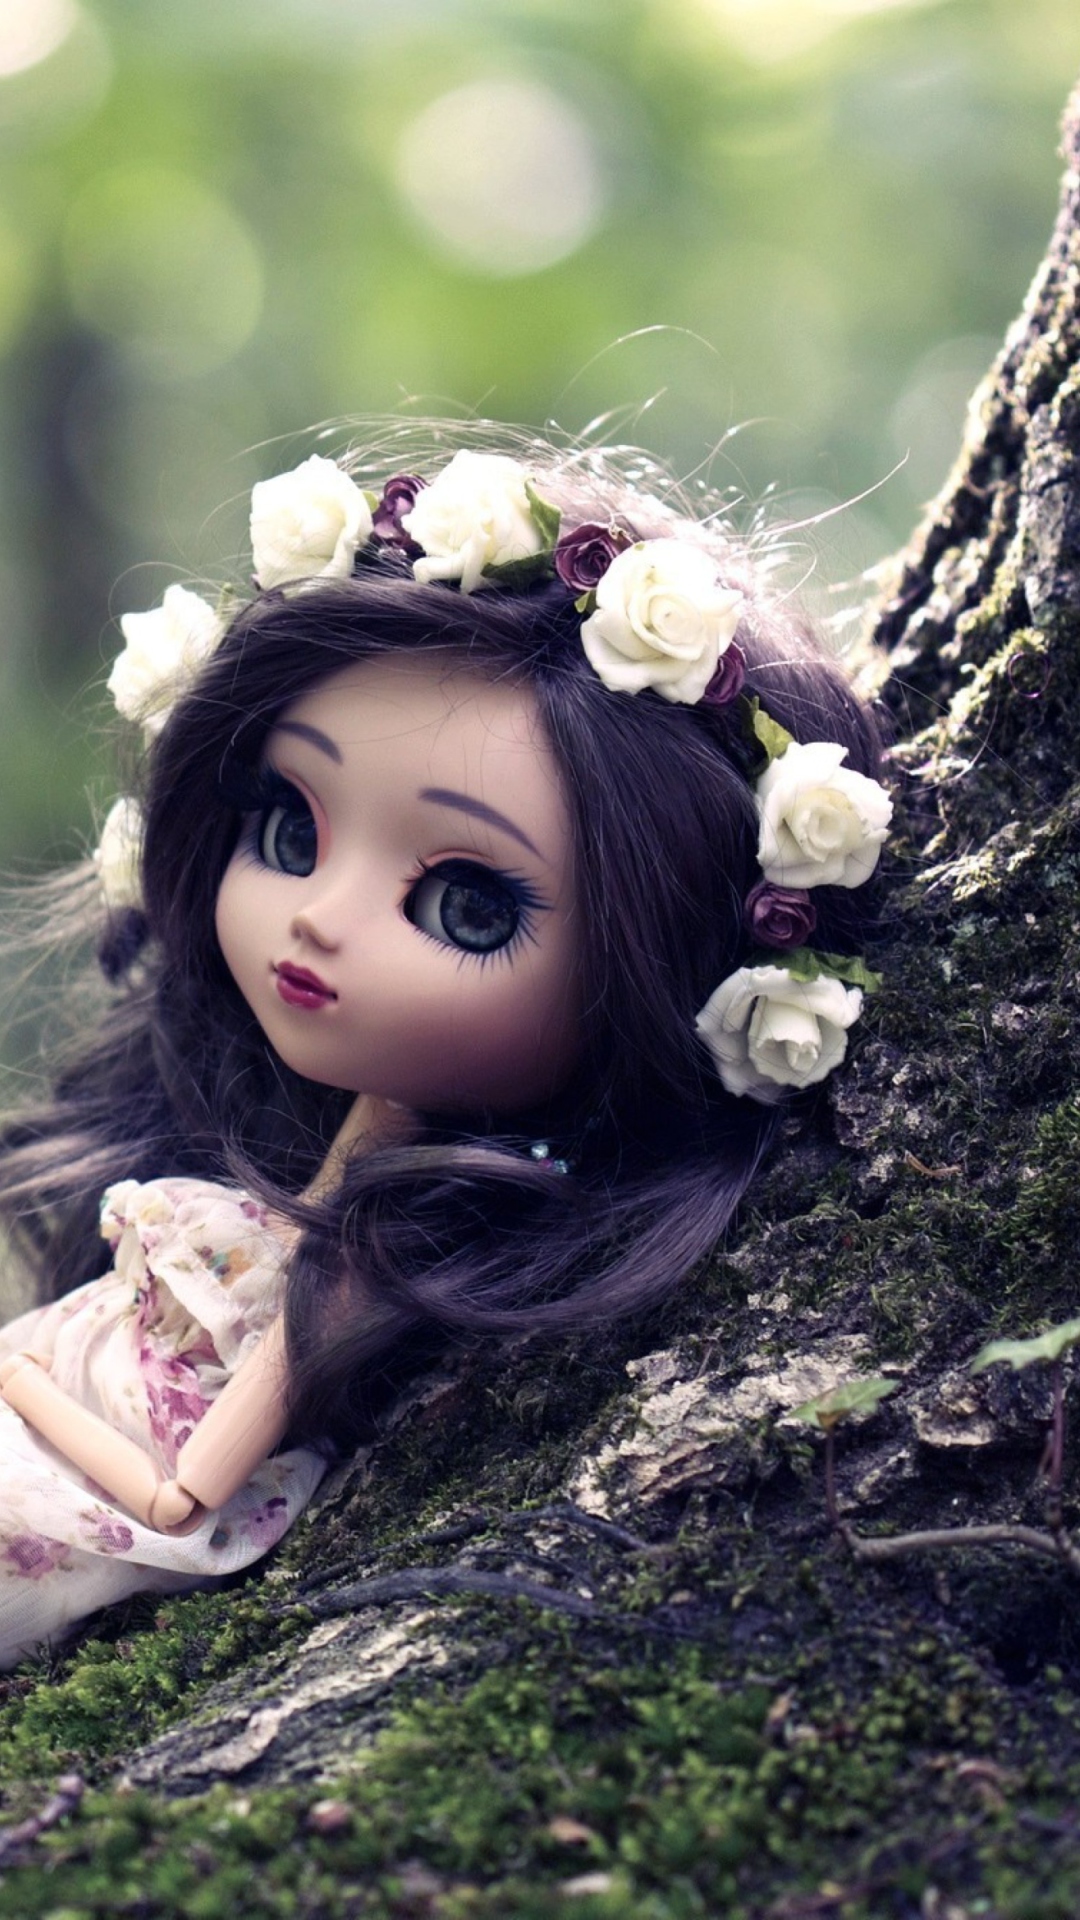 Обои Beautiful Brunette Doll In Flower Wreath 1080x1920